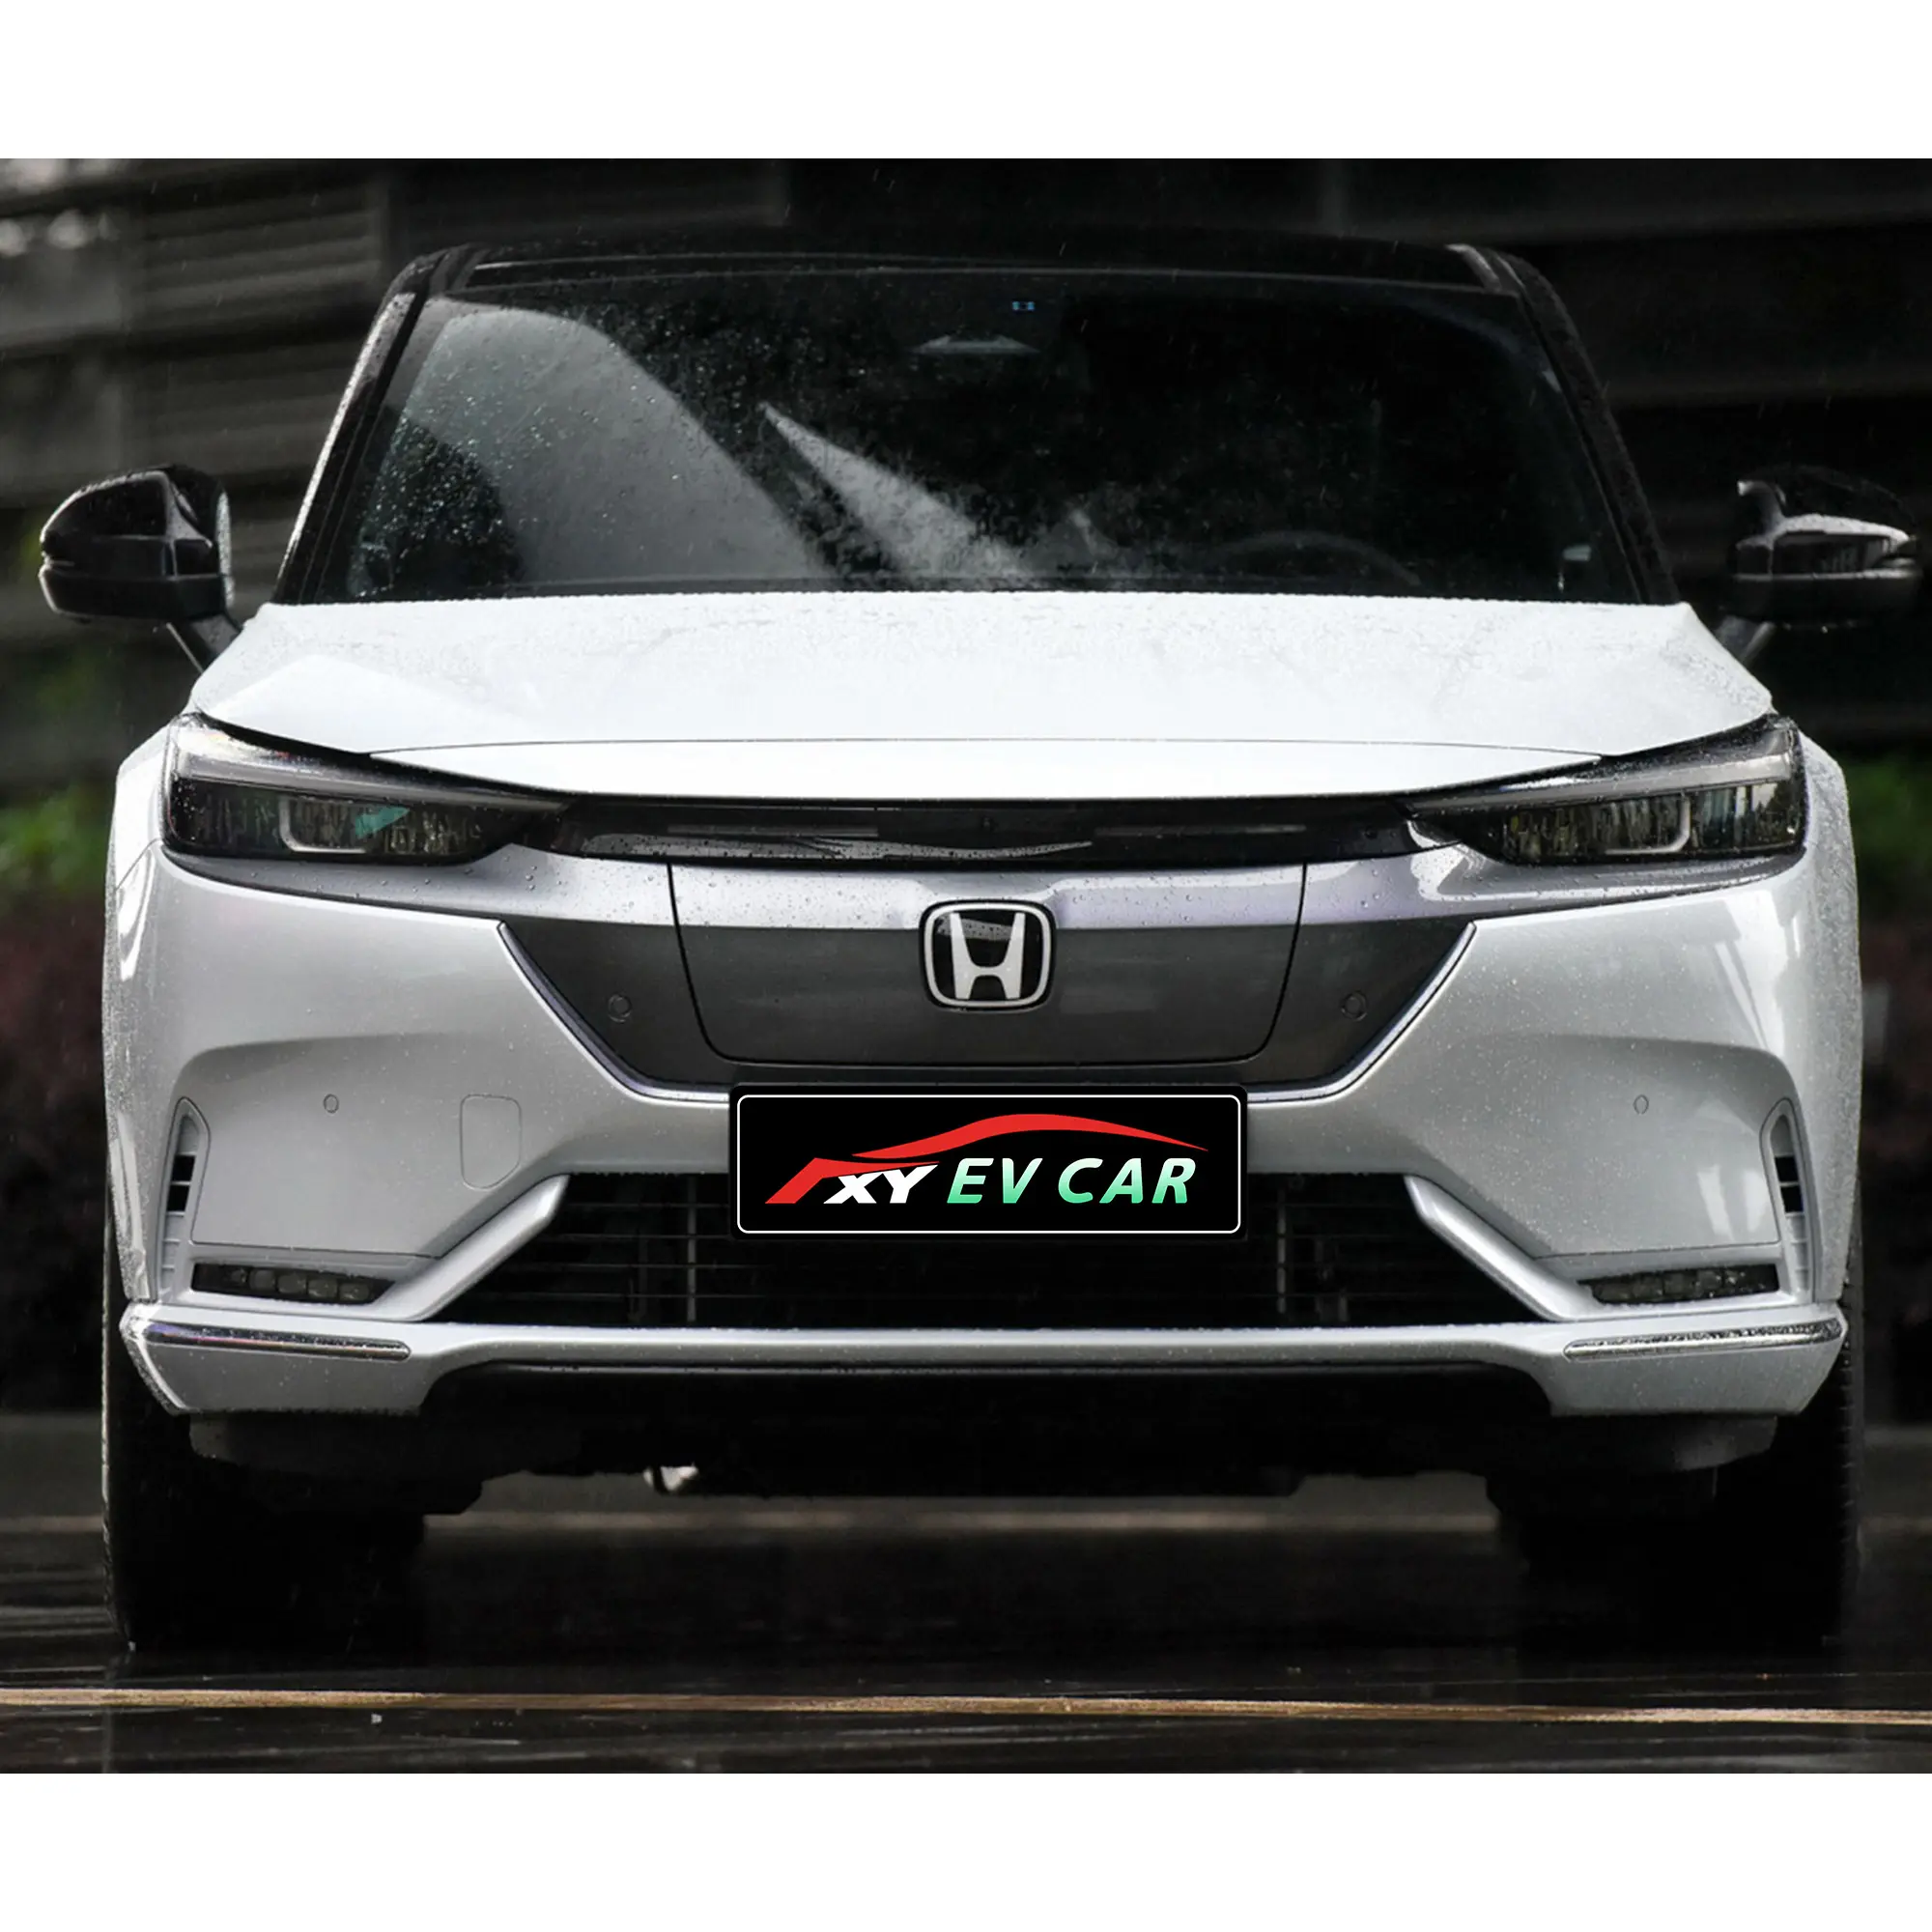 En stock Dongfeng Honda ens1 Top 510 km nuevos vehículos de energía EV SUV 5 puertas coche 2022 2023 Honda ens1 coche eléctrico